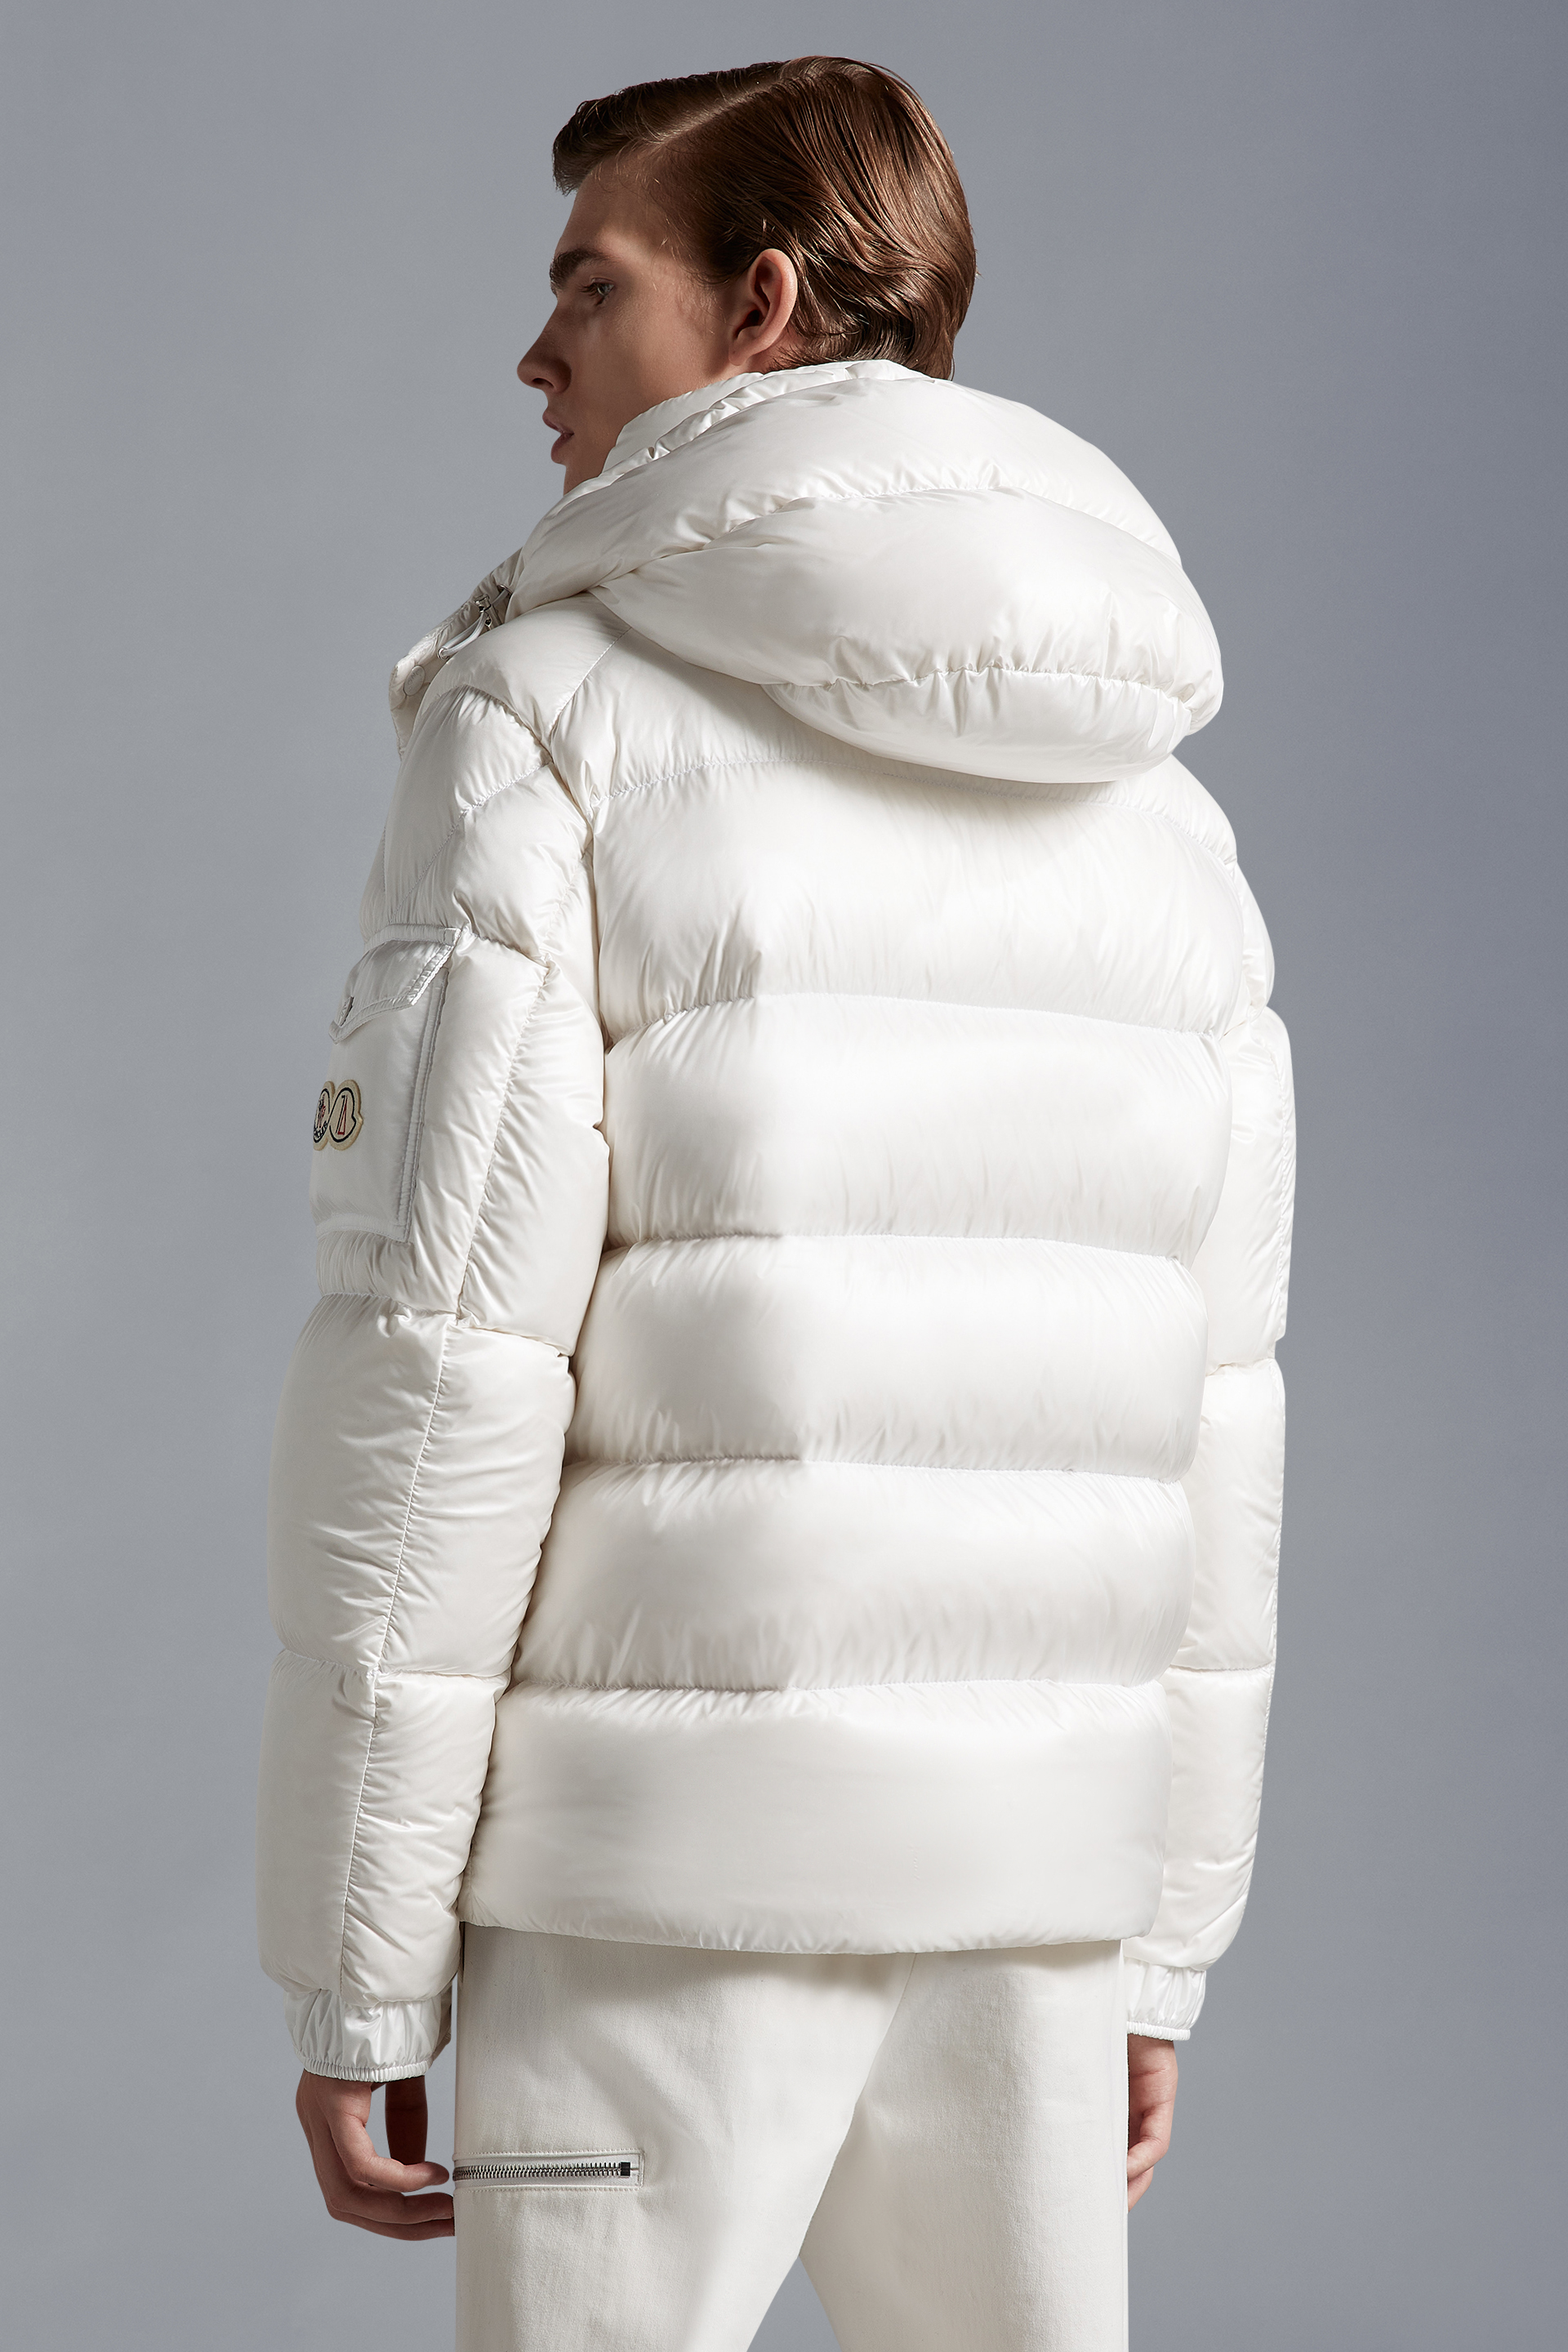 Moncler Maya 70冬季短款男士羽绒服夹克外套白色– 短款羽绒服– 男装 